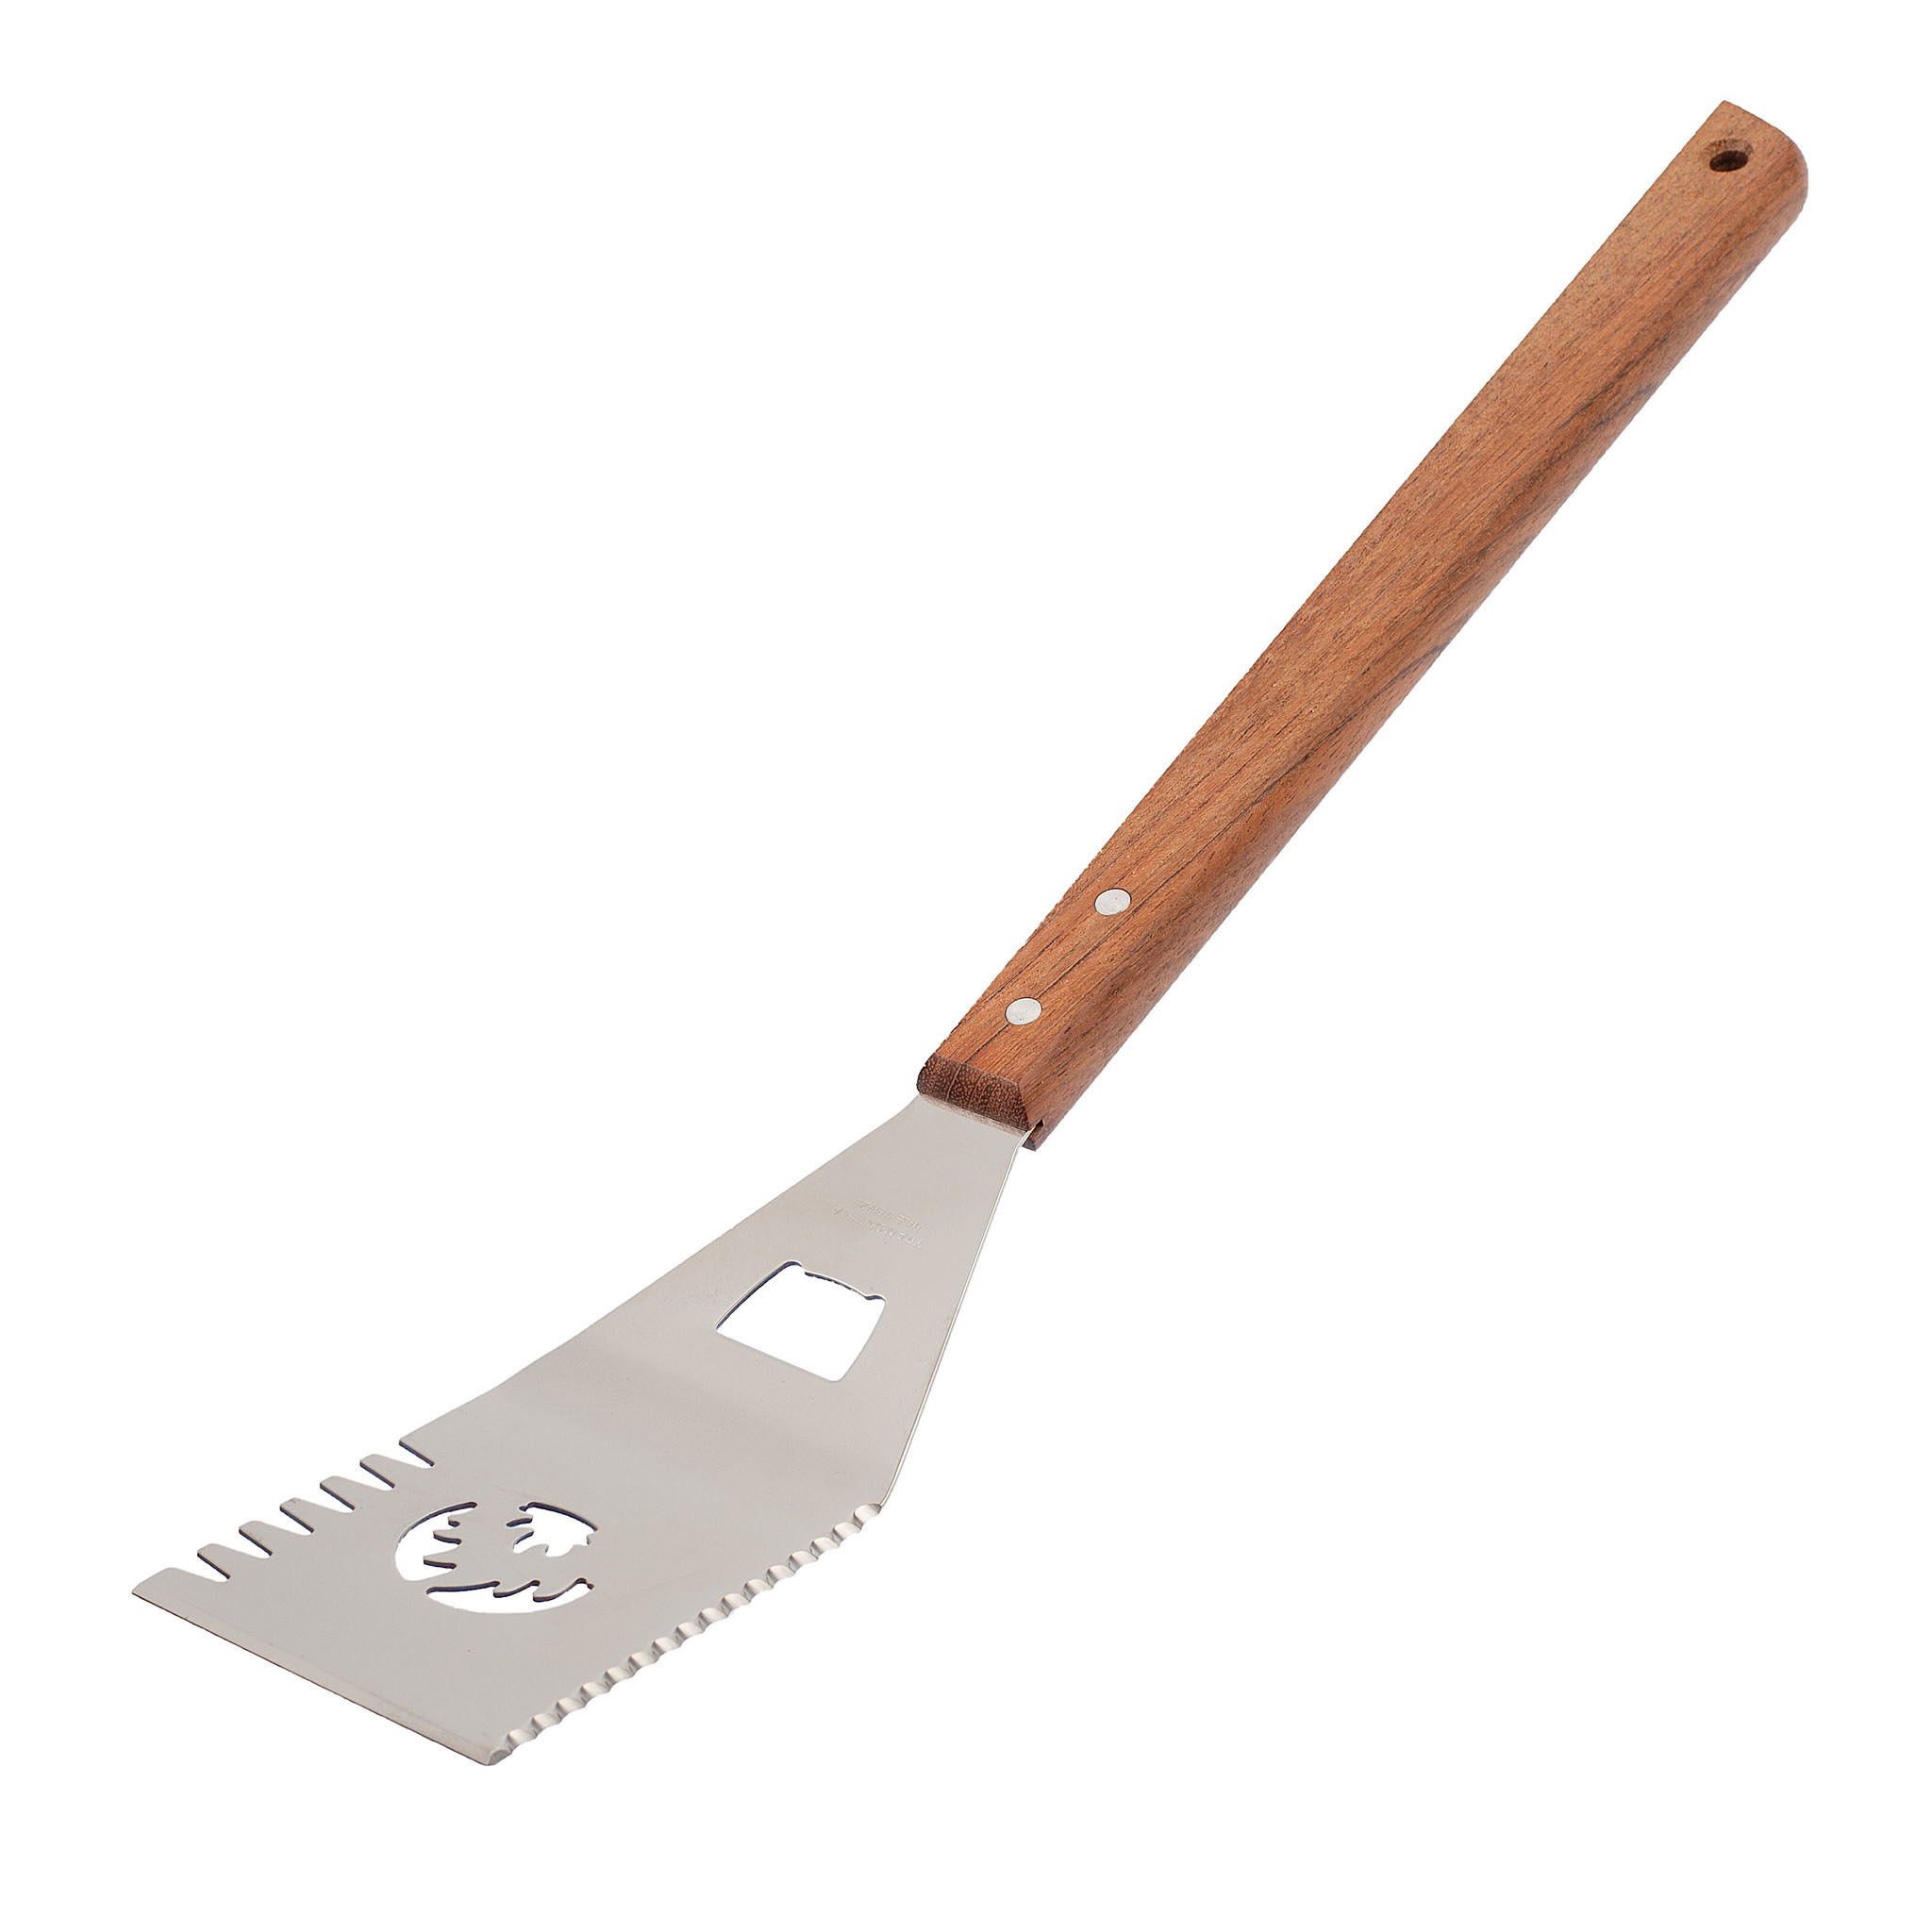 Мультифункциональная лопатка для барбекю, 480 мм нож для бисквита длина лезвия 35 см крупные зубцы ручка дерево